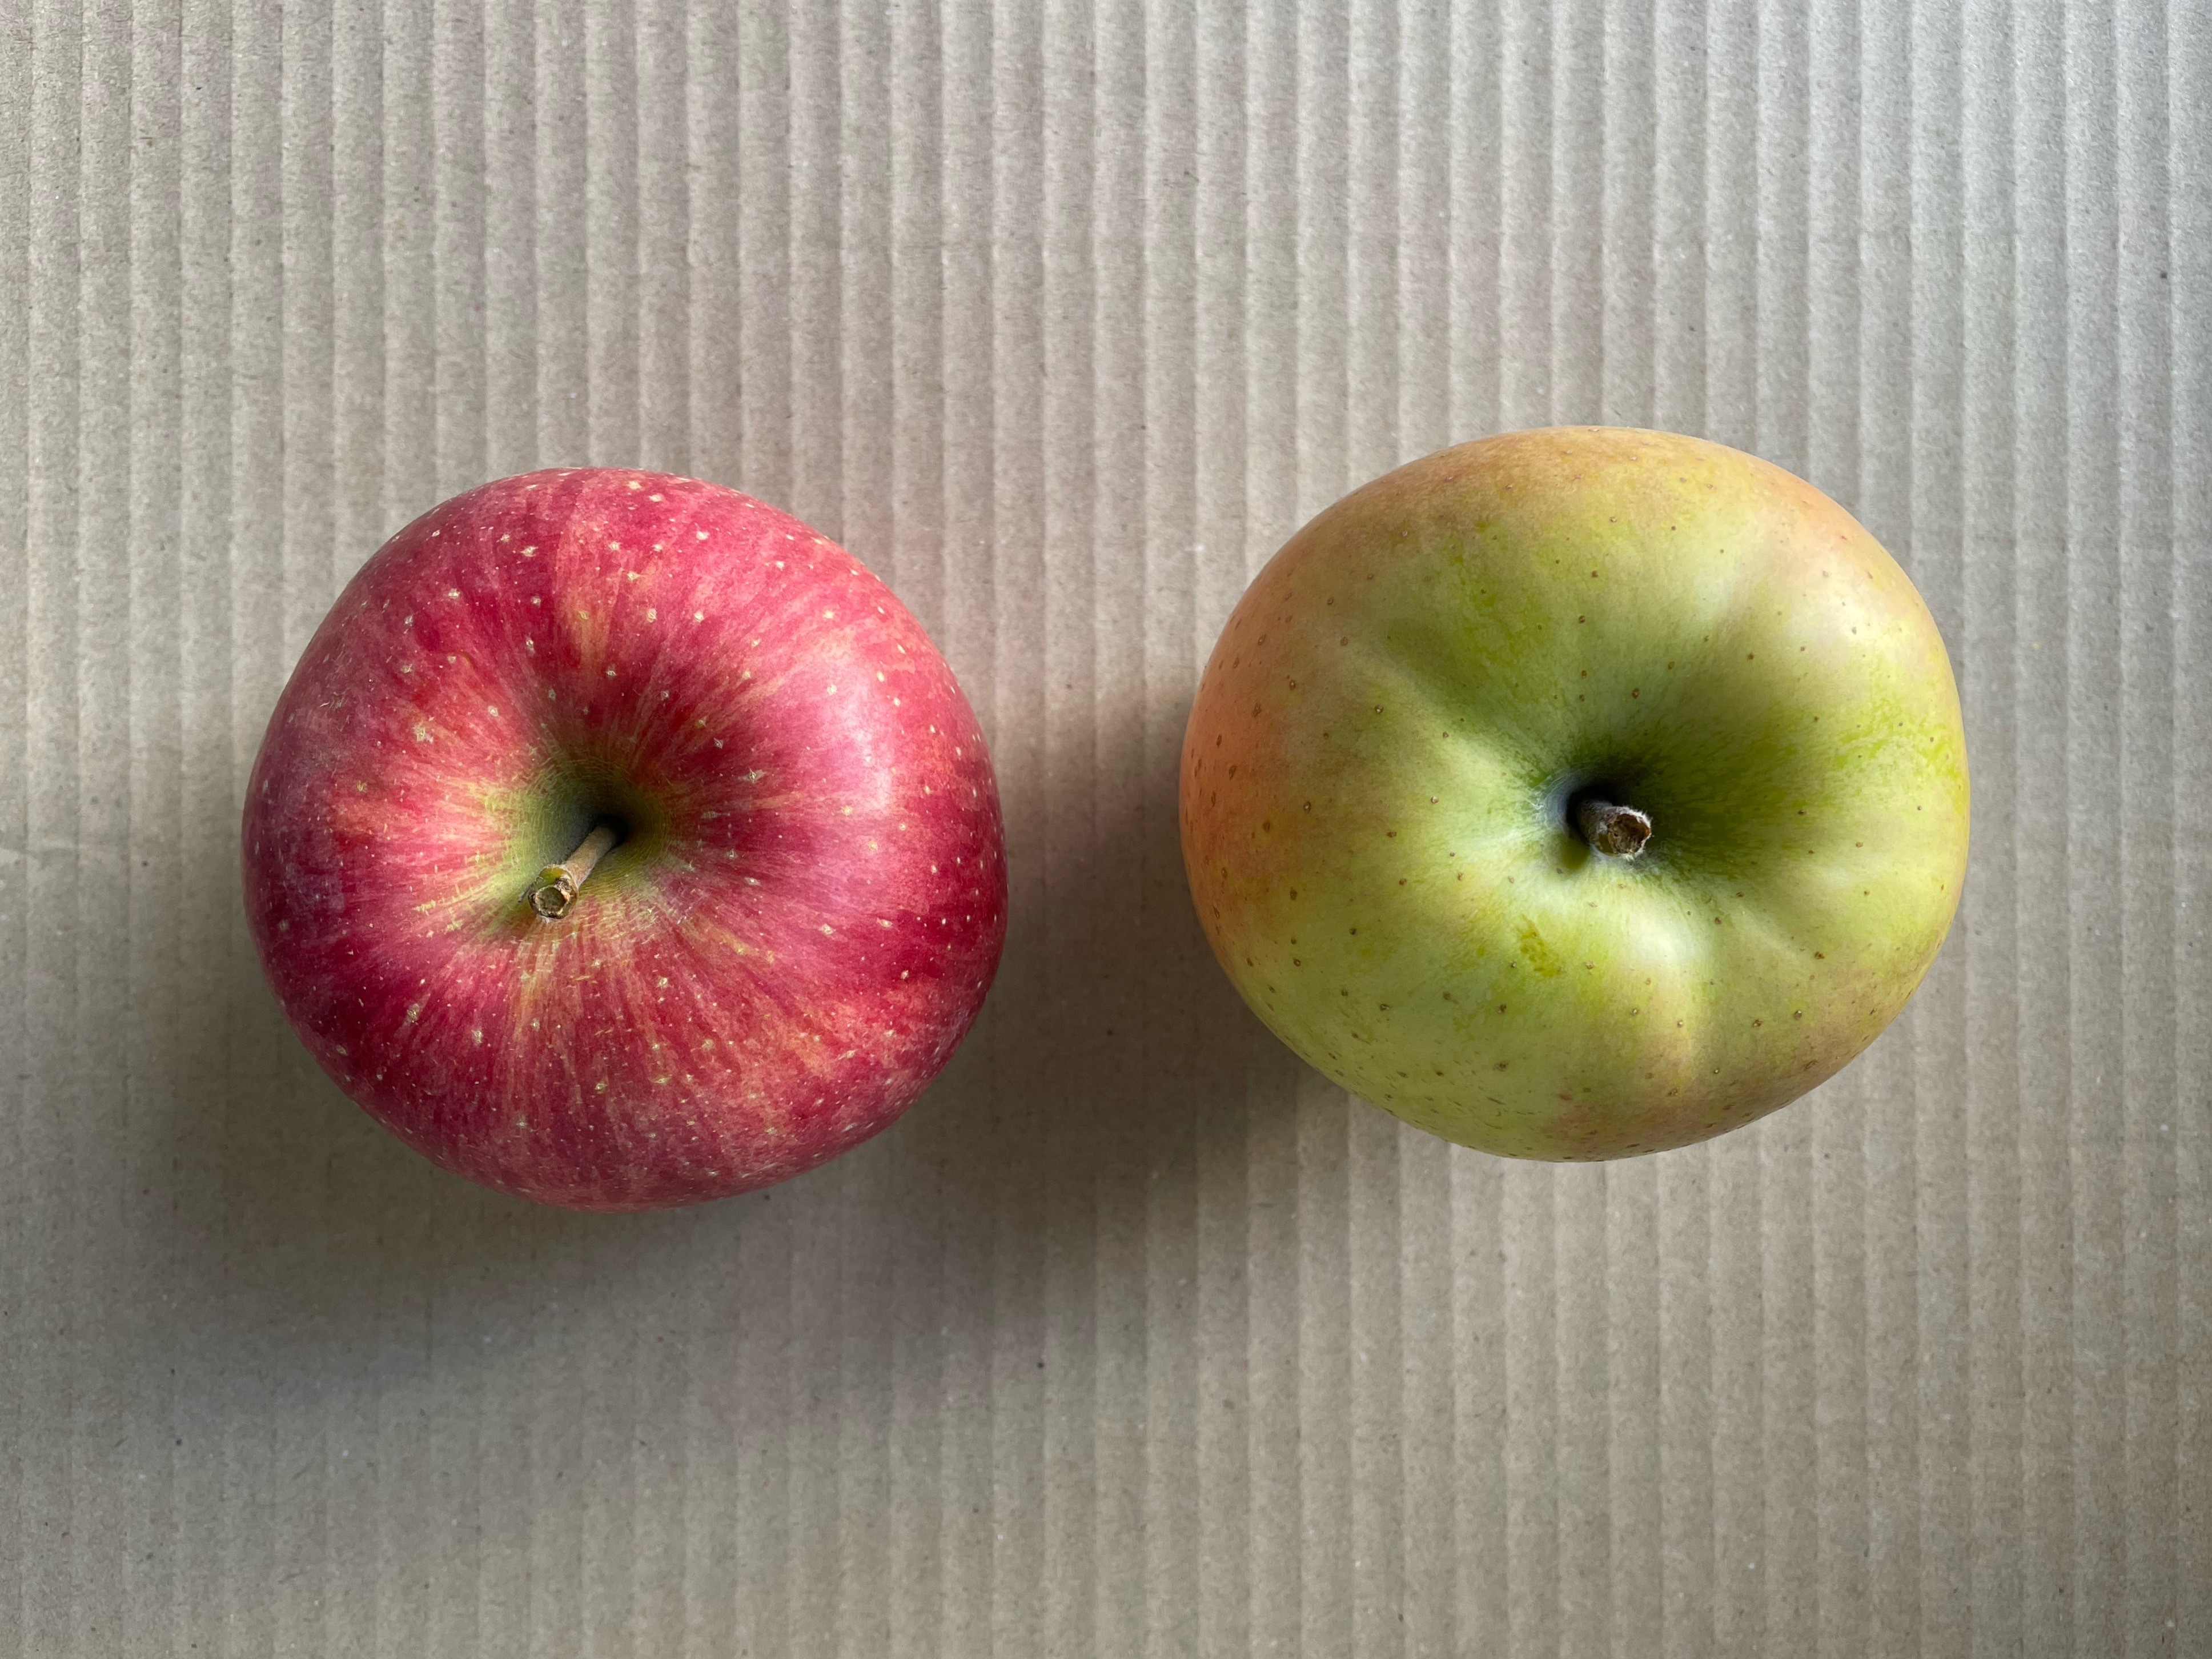 特選サンふじ　10キロ　長野県産　減農薬　化学肥料不使用　わんぱくりんご